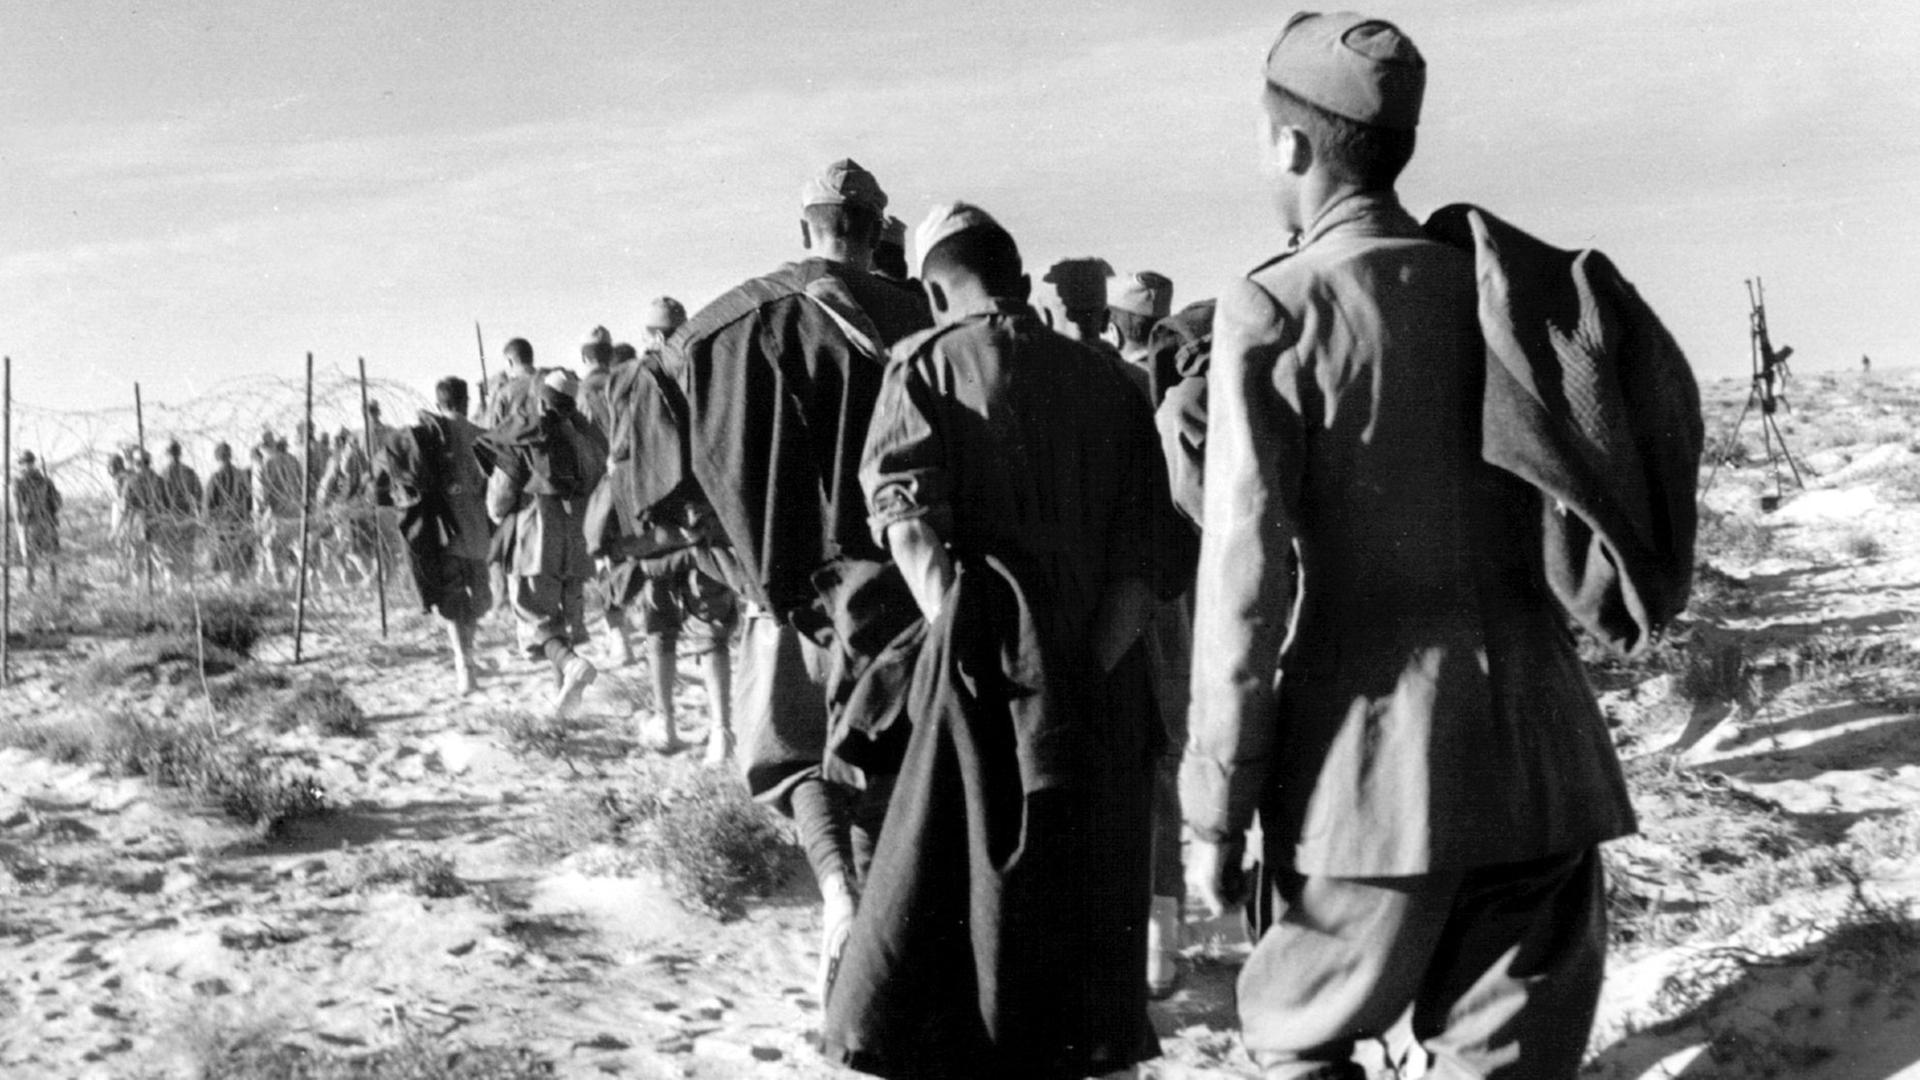 Italienische Kriegsgefangene, die an deutscher Seite kämpften, während der Schlacht von El Alamain. Der Afrikafeldzug unter Generalfeldmarschall Erwin Rommel ("Wüstenfuchs") scheiterte in den von Juni bis November 1942 andauernden Kämpfen bei El Alamain. Trotz des Befehls Adolf Hitlers an Rommel, seinen Truppen "keinen anderen Weg zu zeigen als den zum Siege oder zum Tode" zog sich Rommel angesichts der britischen Übermacht zurück. Im März 1943 kapitulierten die Streitkräfte der Achsenmächte in Afrika.